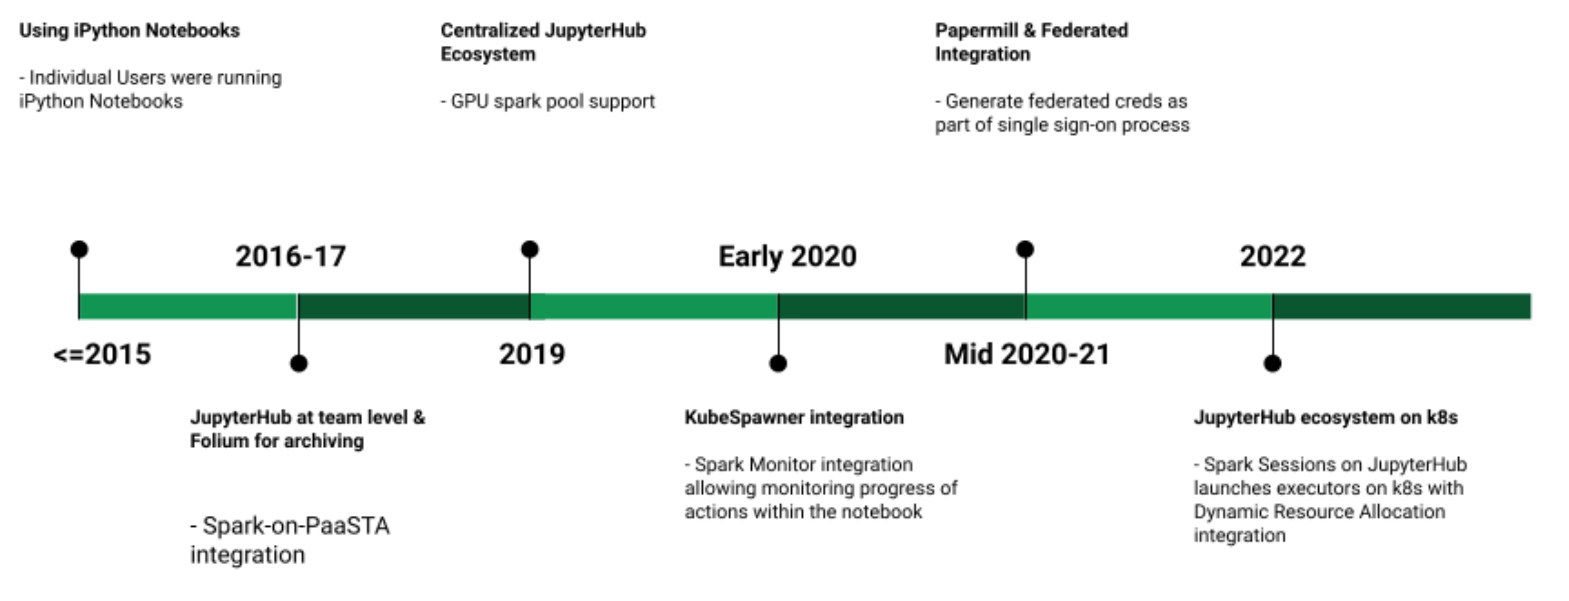 Timeline flow graph of JupyterHub ecosystem evolution